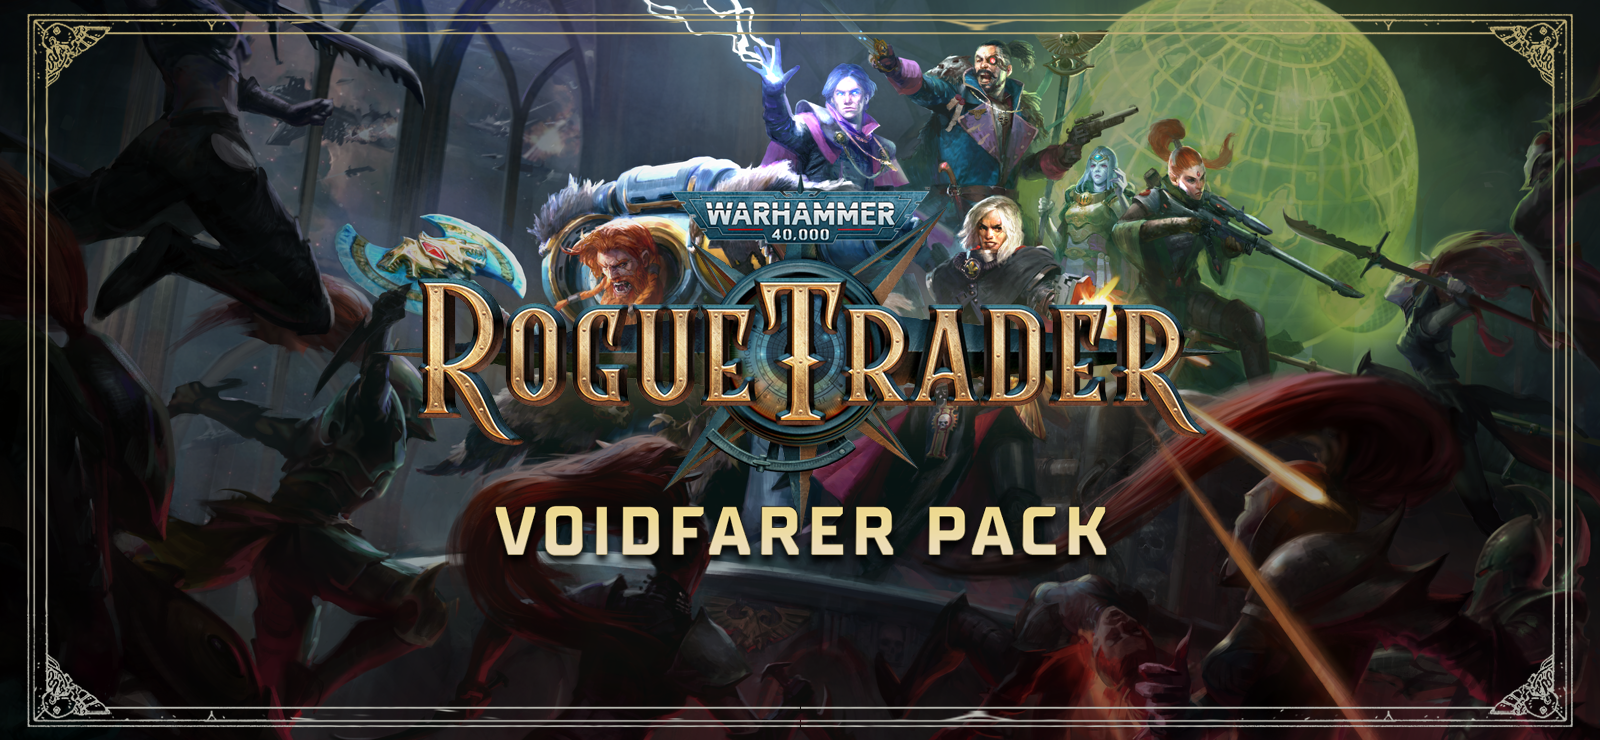 Warhammer 40,000: Rogue Trader - Voidfarer Pack